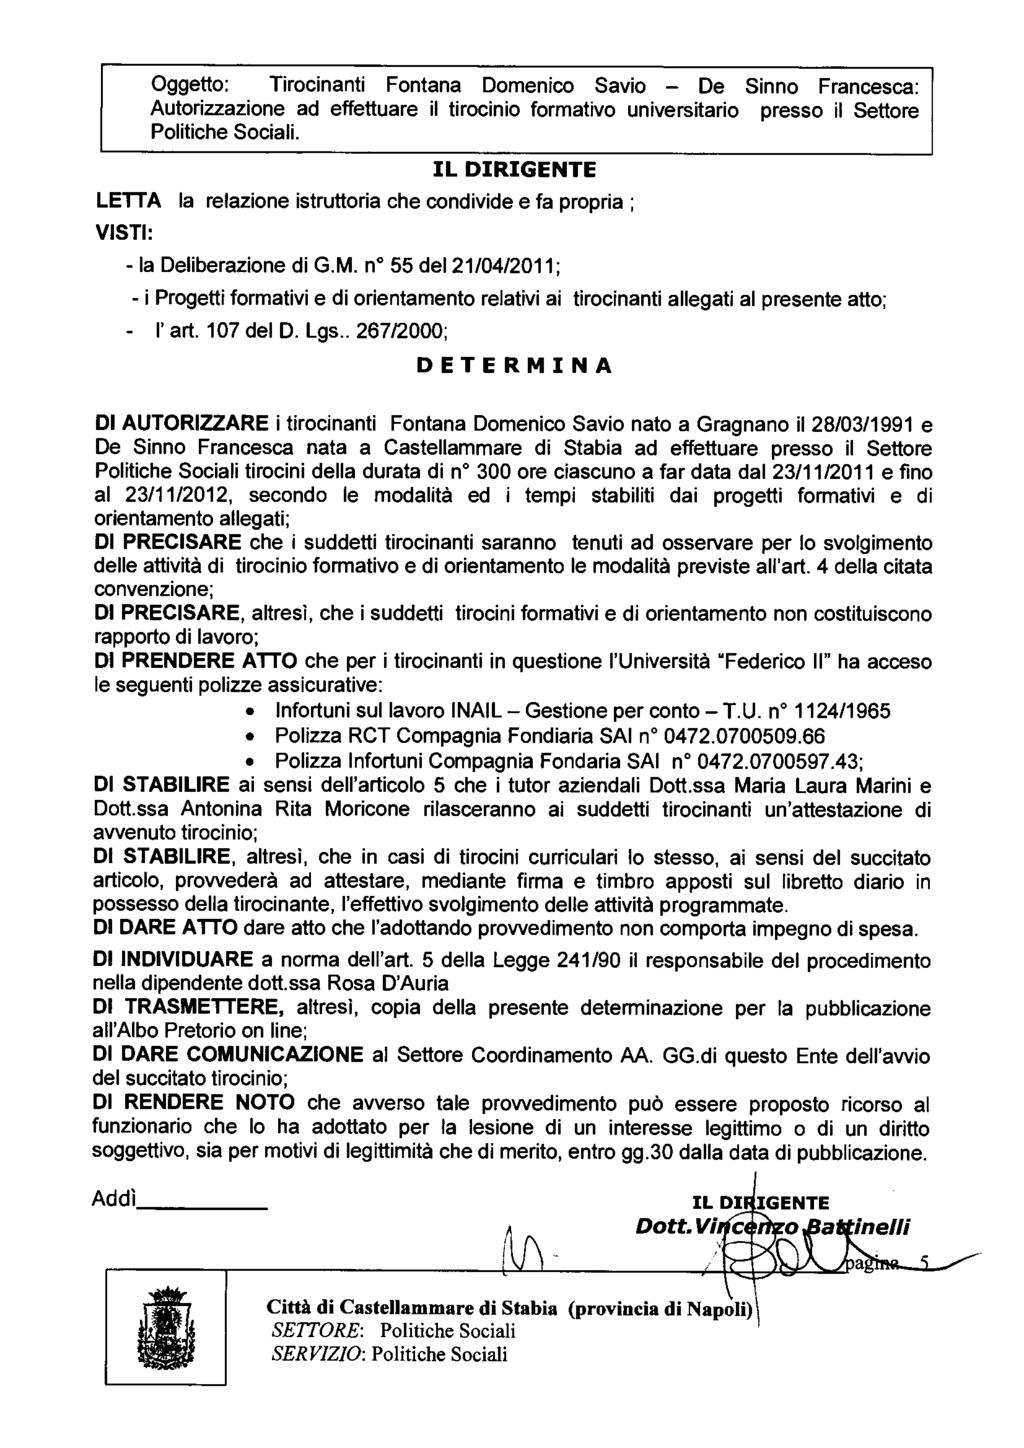 Oggetto: Tirocinanti Fontana Domenico Savio - De Sinno Francesca: Autorizzazione ad effettuare il tirocinio formativo universitario presso il Settore Politiche Sociali.